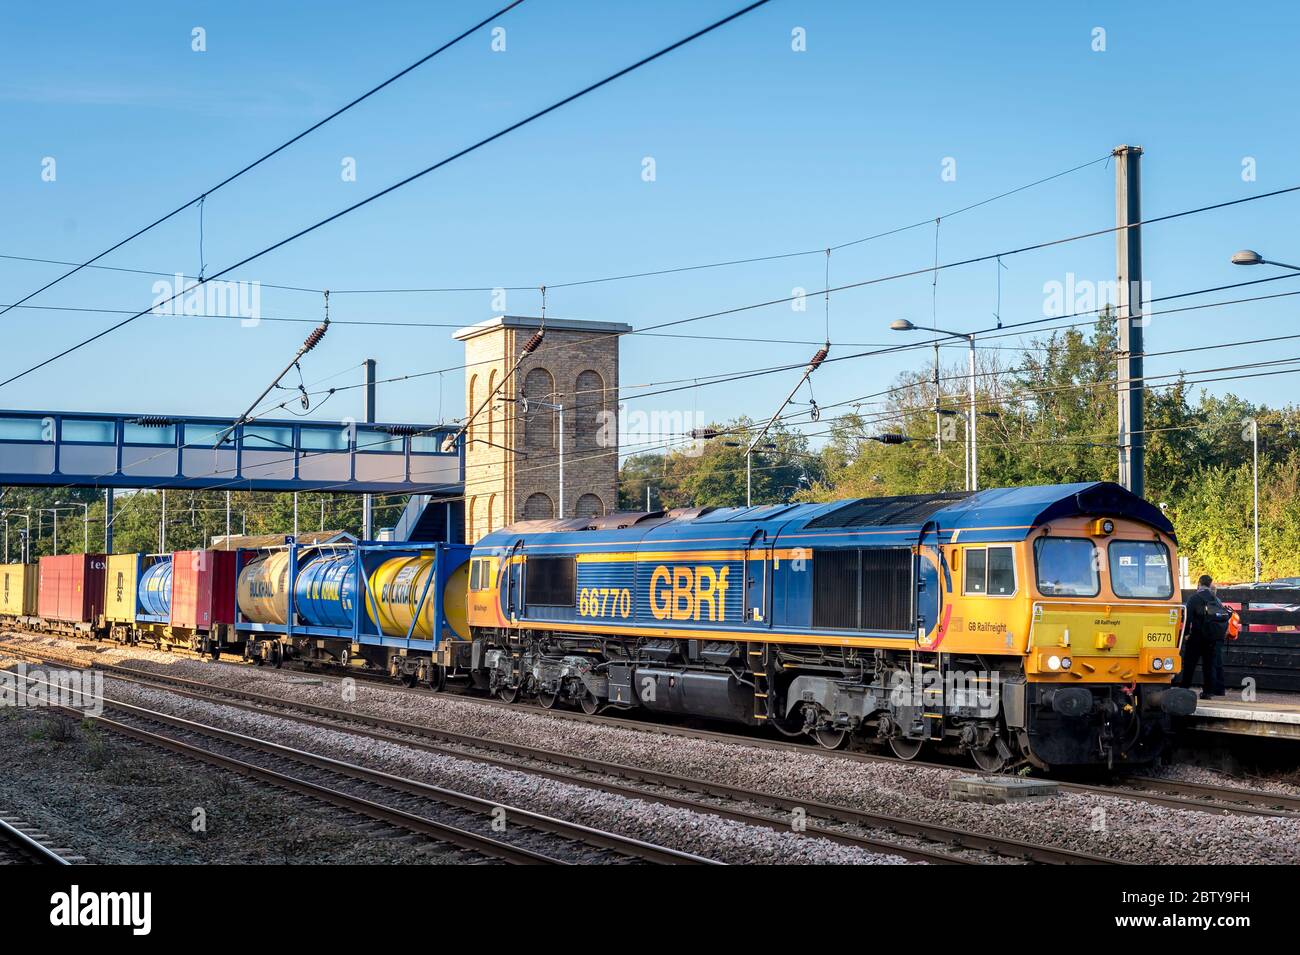 Locomotive de classe 66 de la compagnie de transport ferroviaire GB transportant des citernes Bulkhall au Royaume-Uni. Banque D'Images